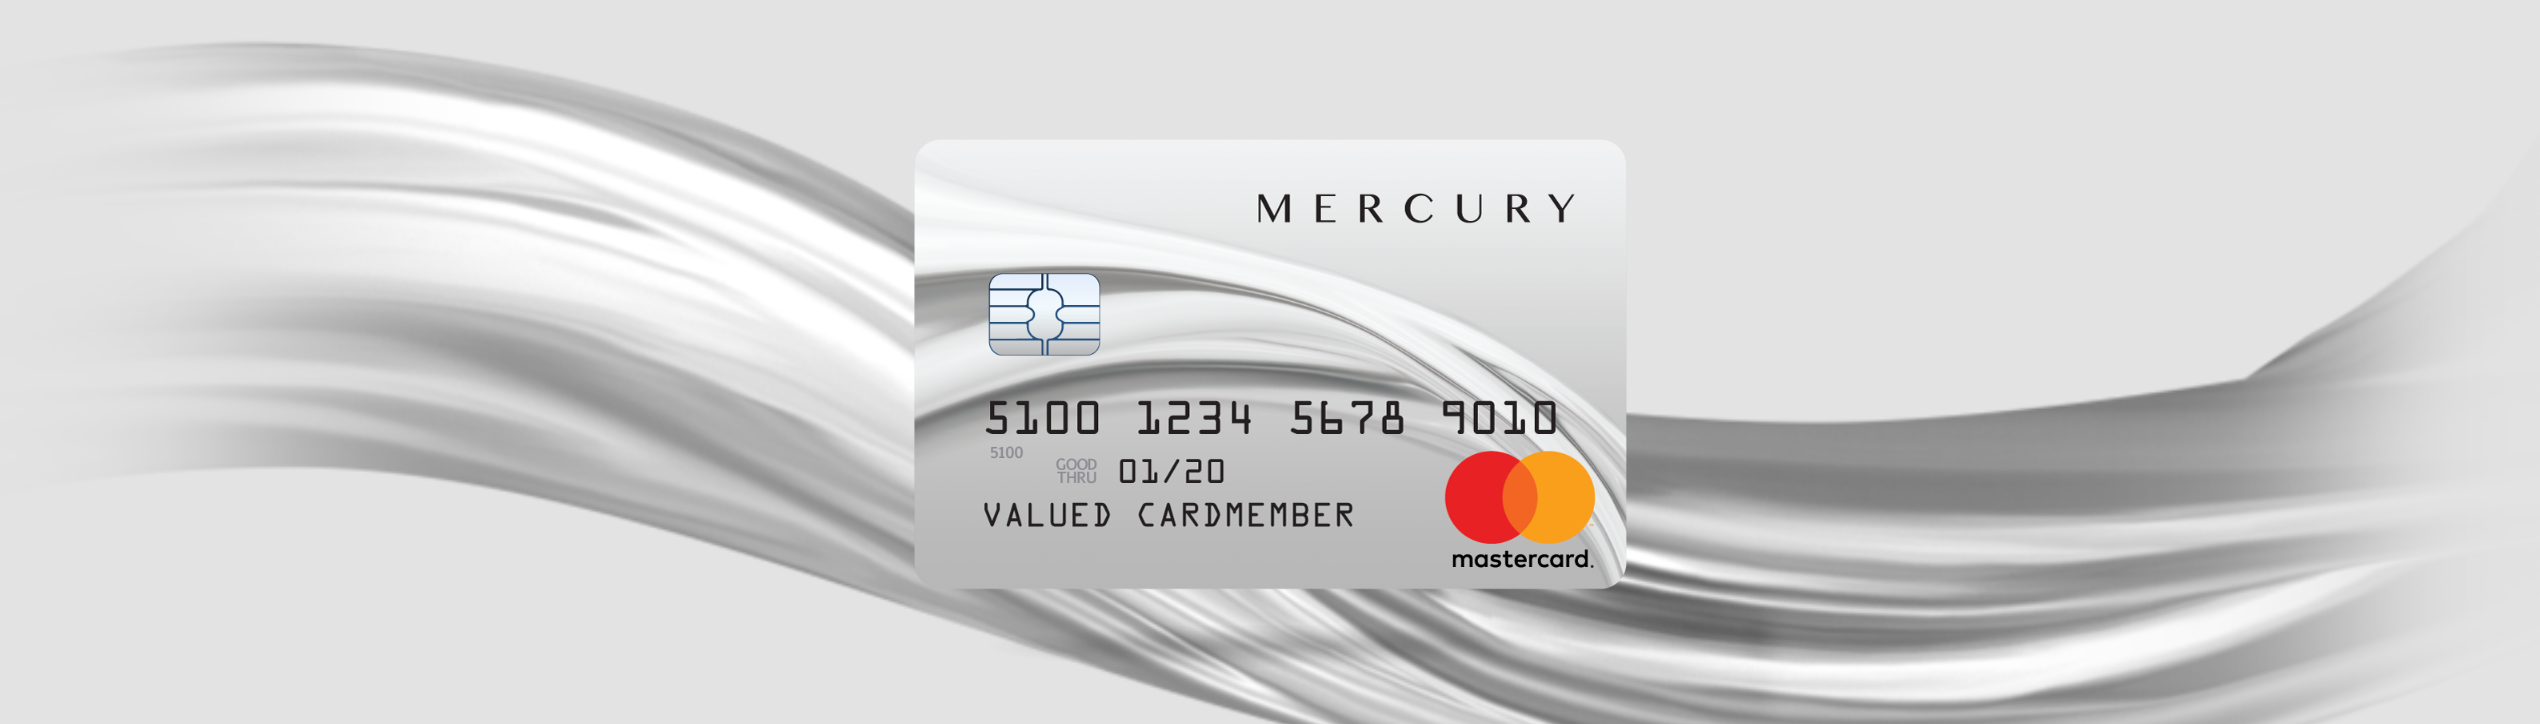 CreditShop Mercury Mastercard